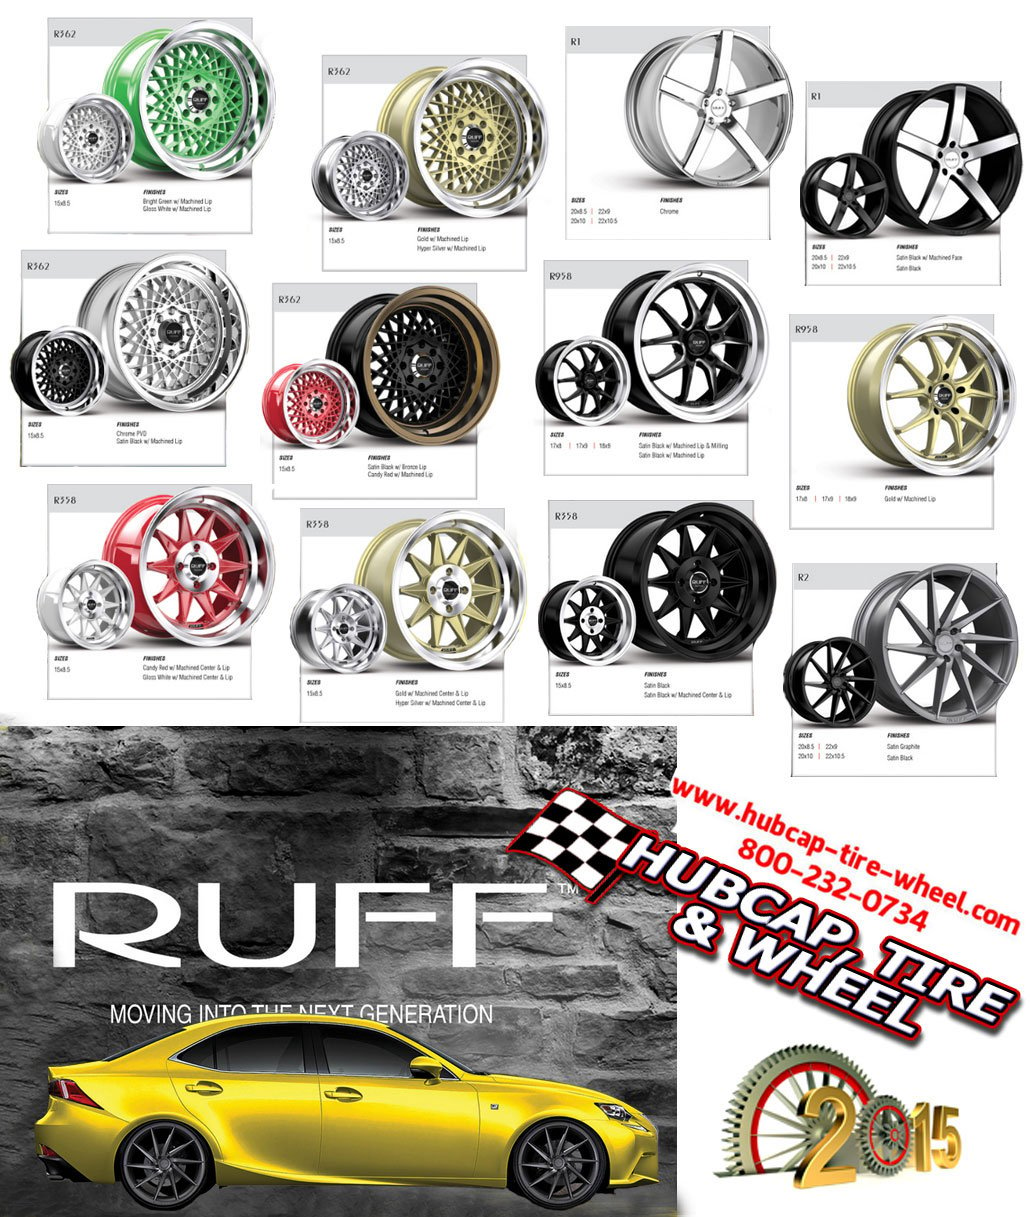 new 2015 ruff racing wheels rims